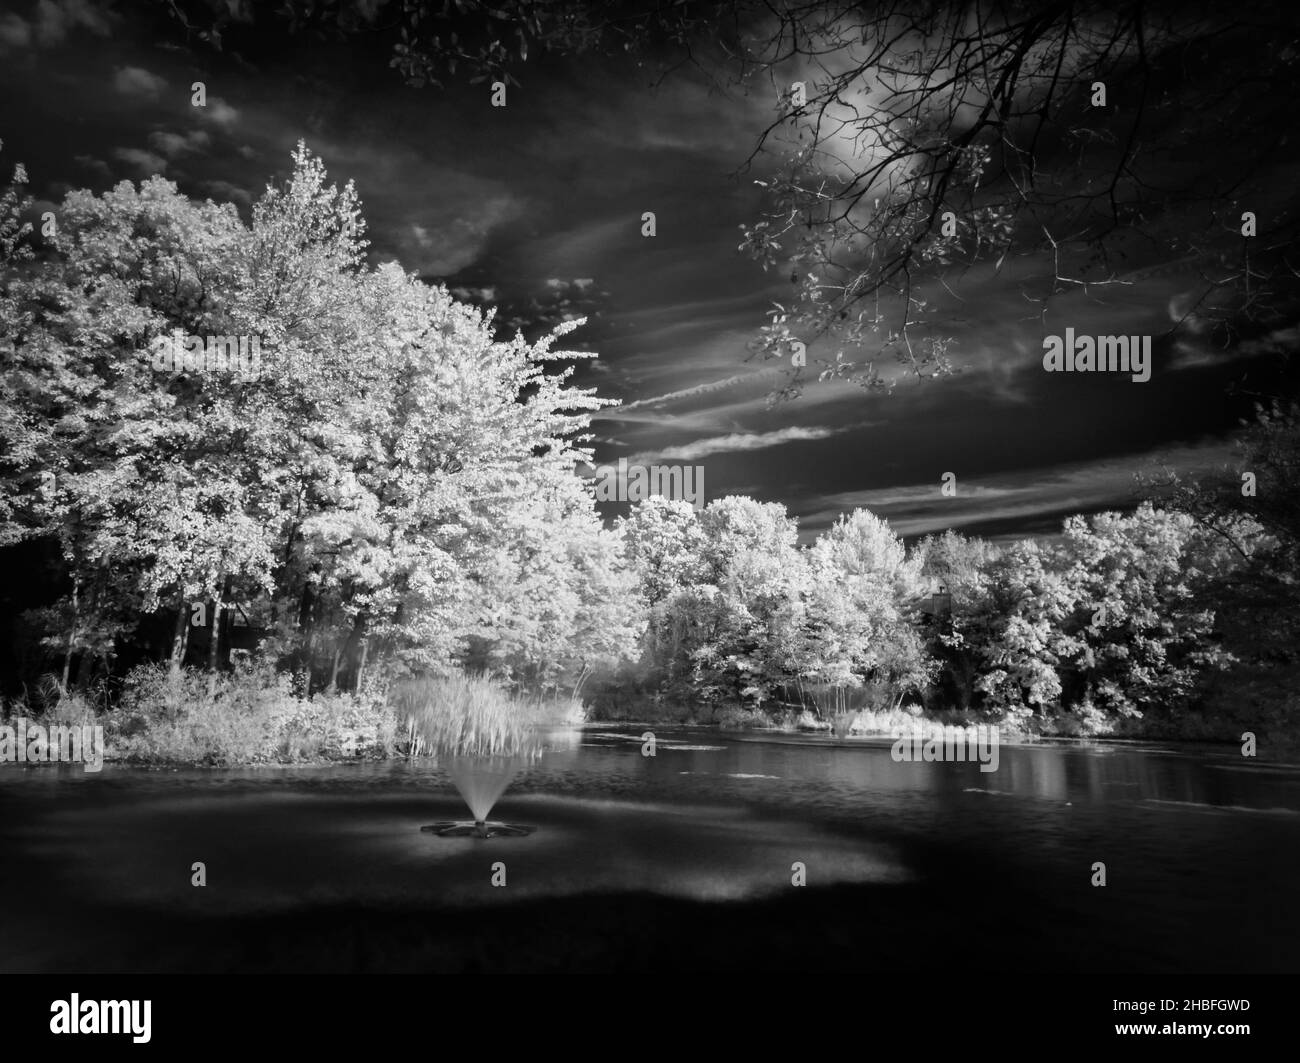 Infrarrojos, fino arte fotografía de un estanque con fuentes de agua Foto de stock